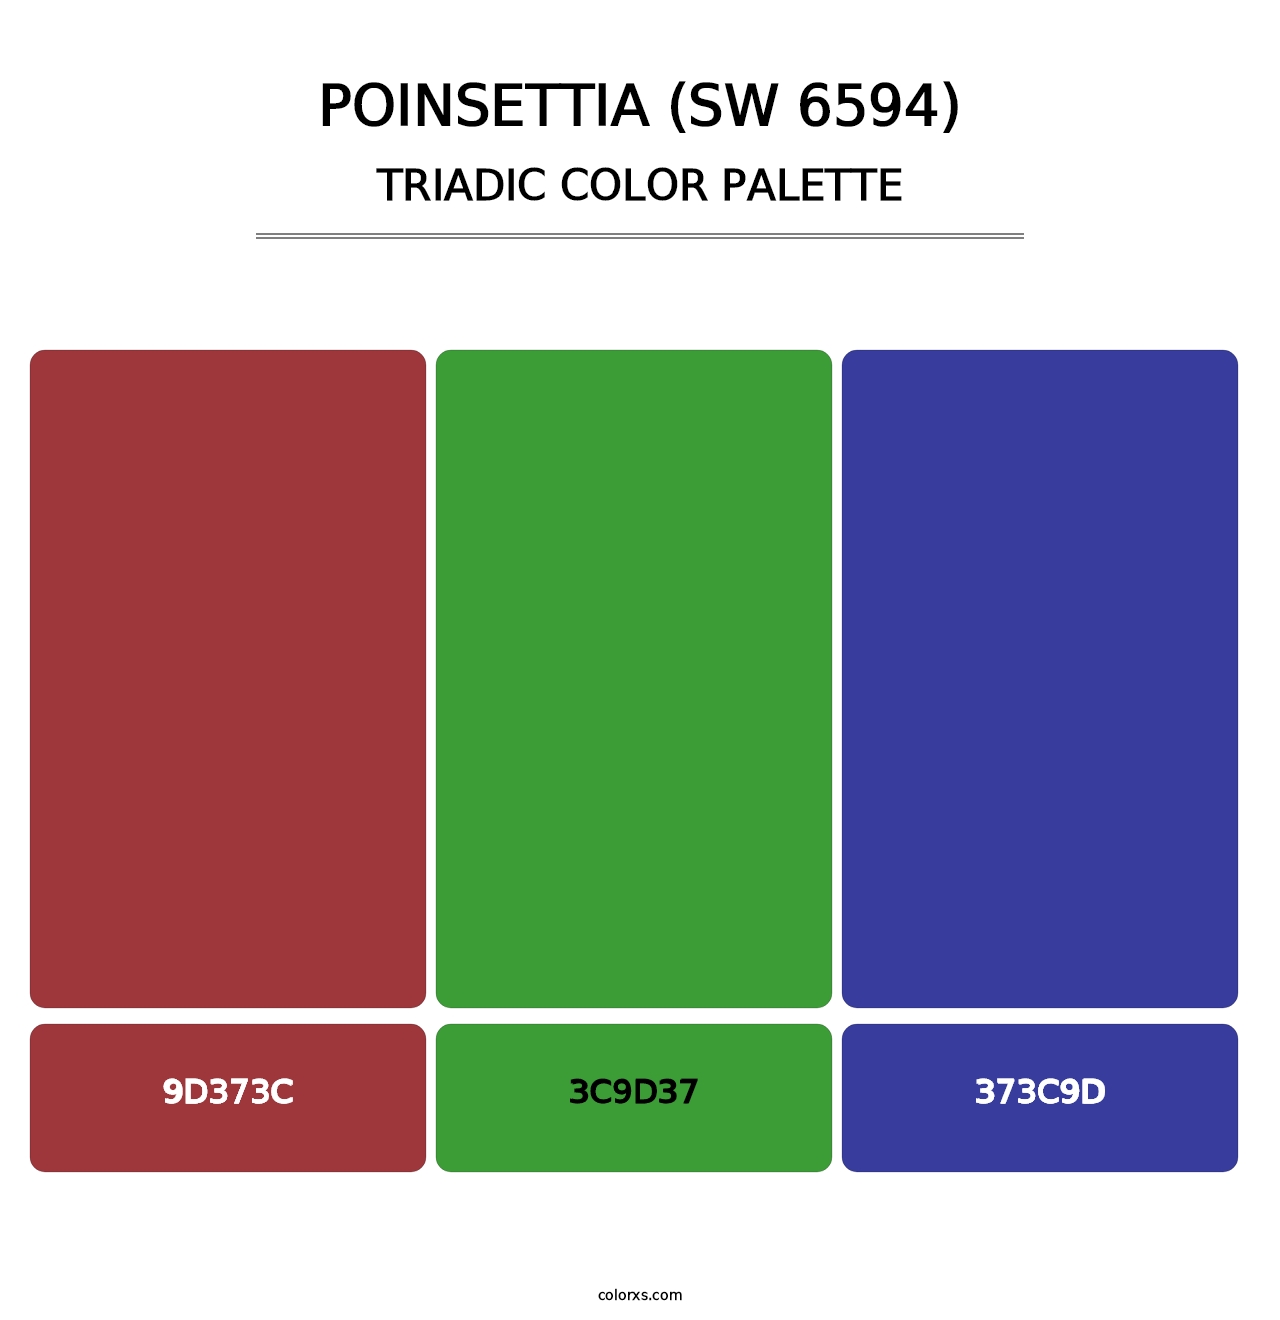 Poinsettia (SW 6594) - Triadic Color Palette